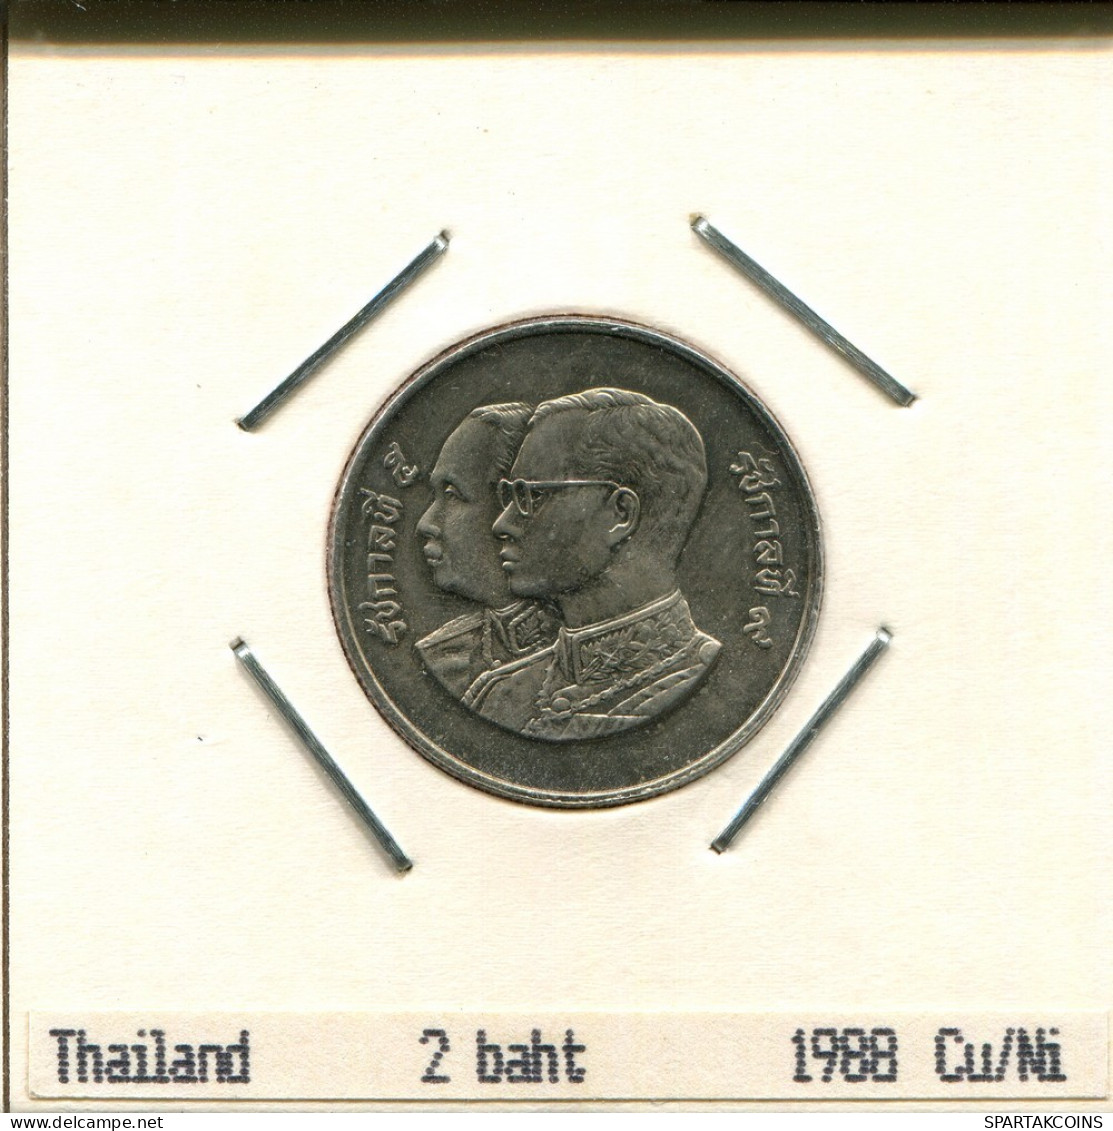 2 BAHT 1988 TAILANDESA THAILAND Moneda #AR996.E.A - Tailandia